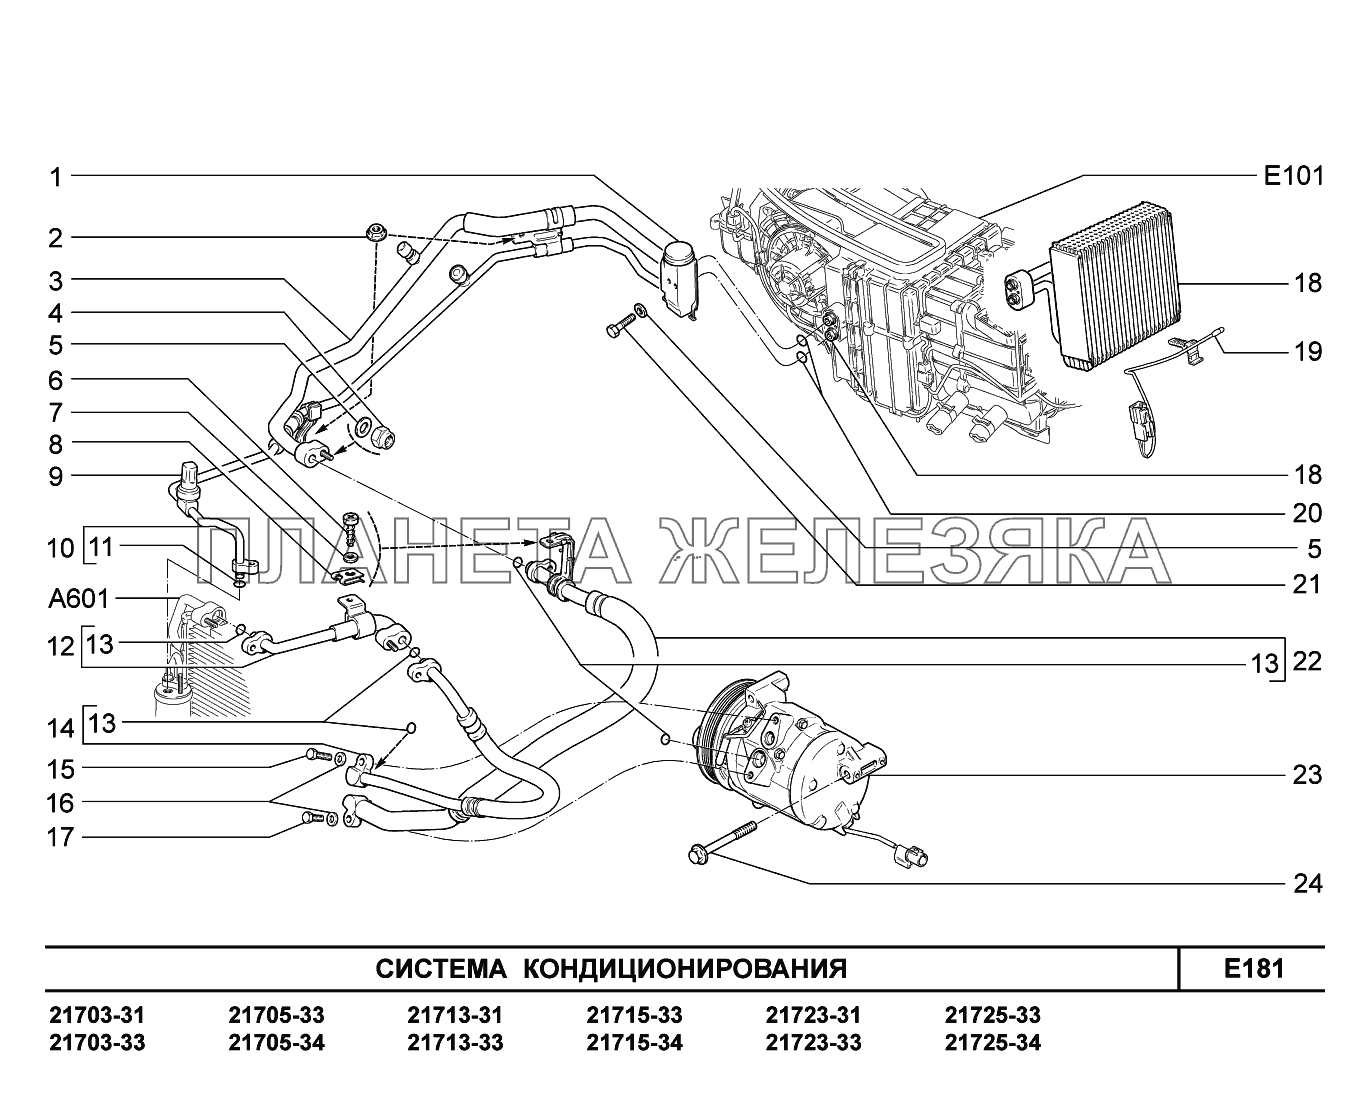 E181. Система кондиционирования ВАЗ-2170 